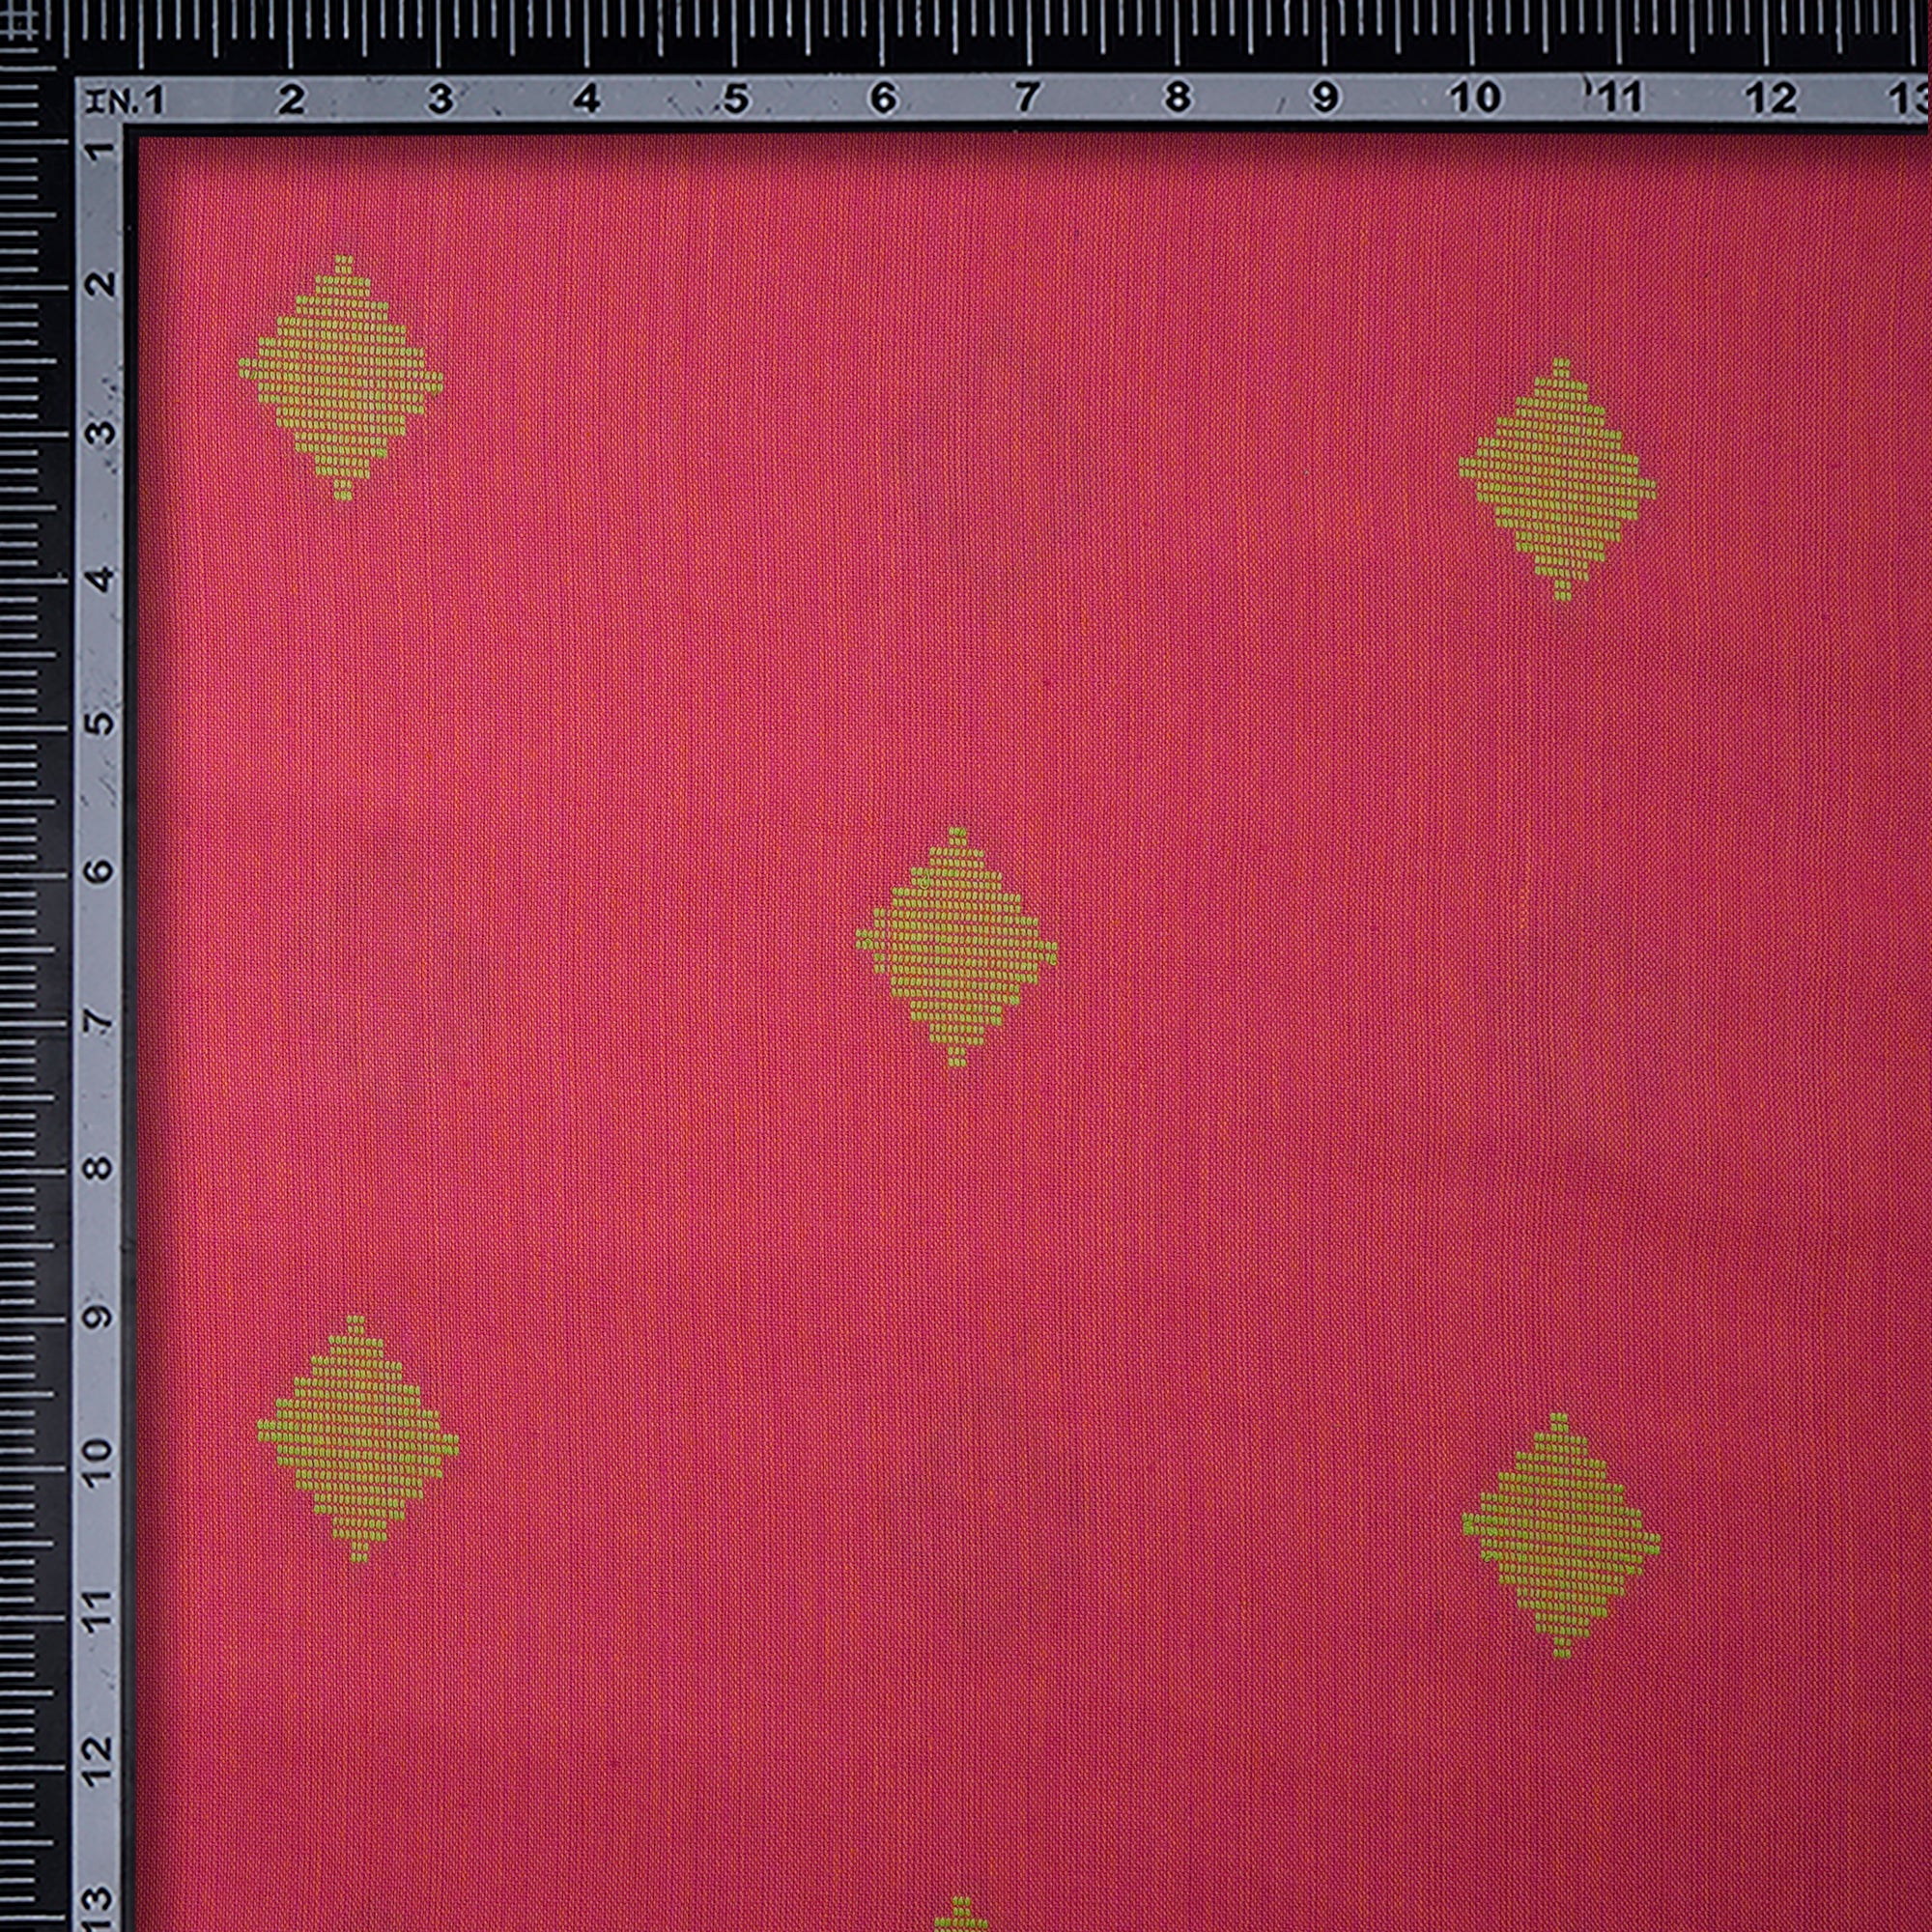 Honeysuckle Geometric Pattern Yarn Dyed Fancy Cutwork South Cotton Fabric